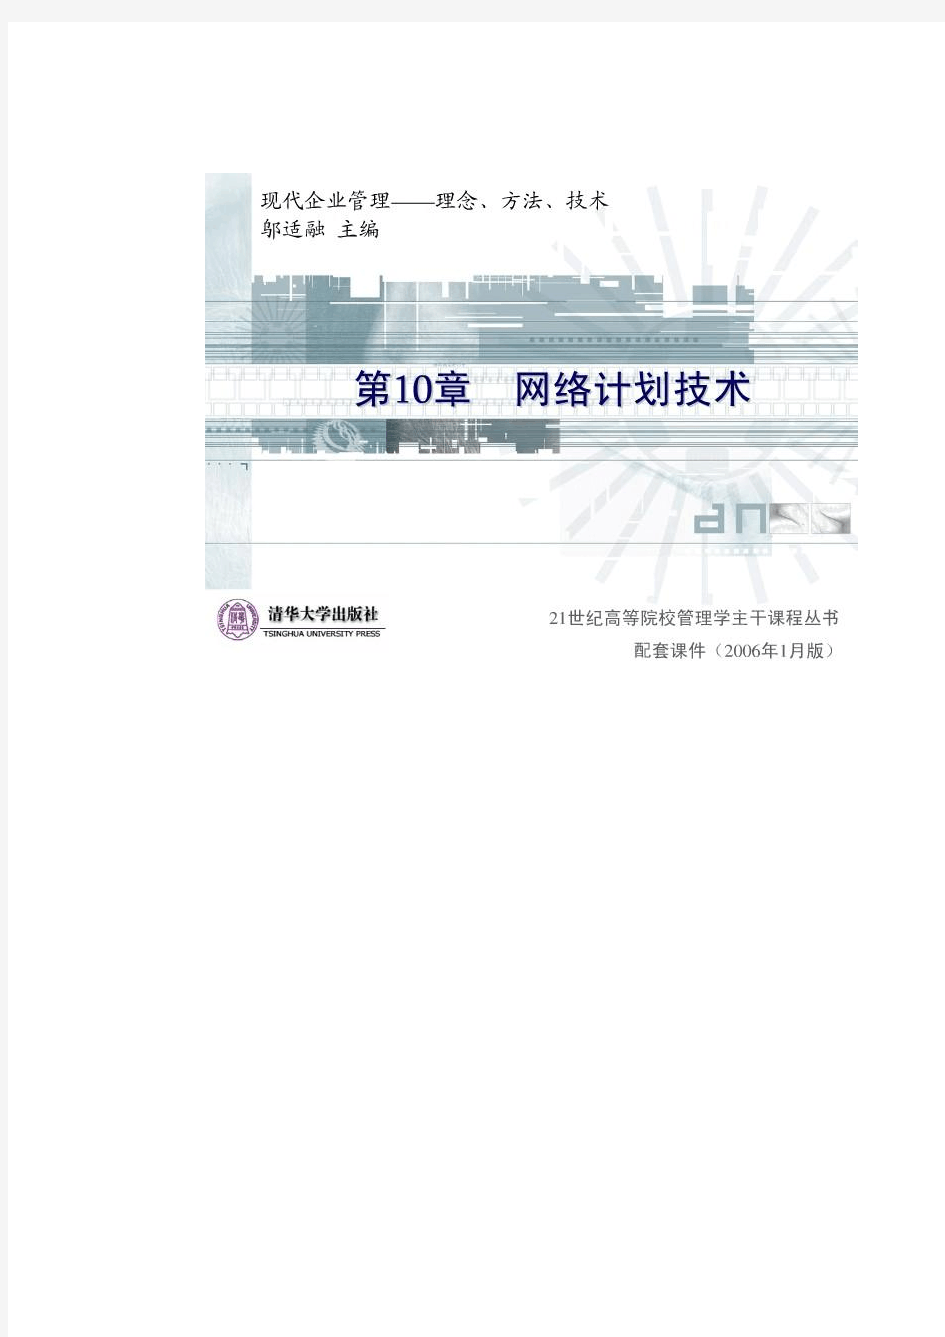 清华大学《现代企业管理》PPT课件-第10章企业技术管理(上)